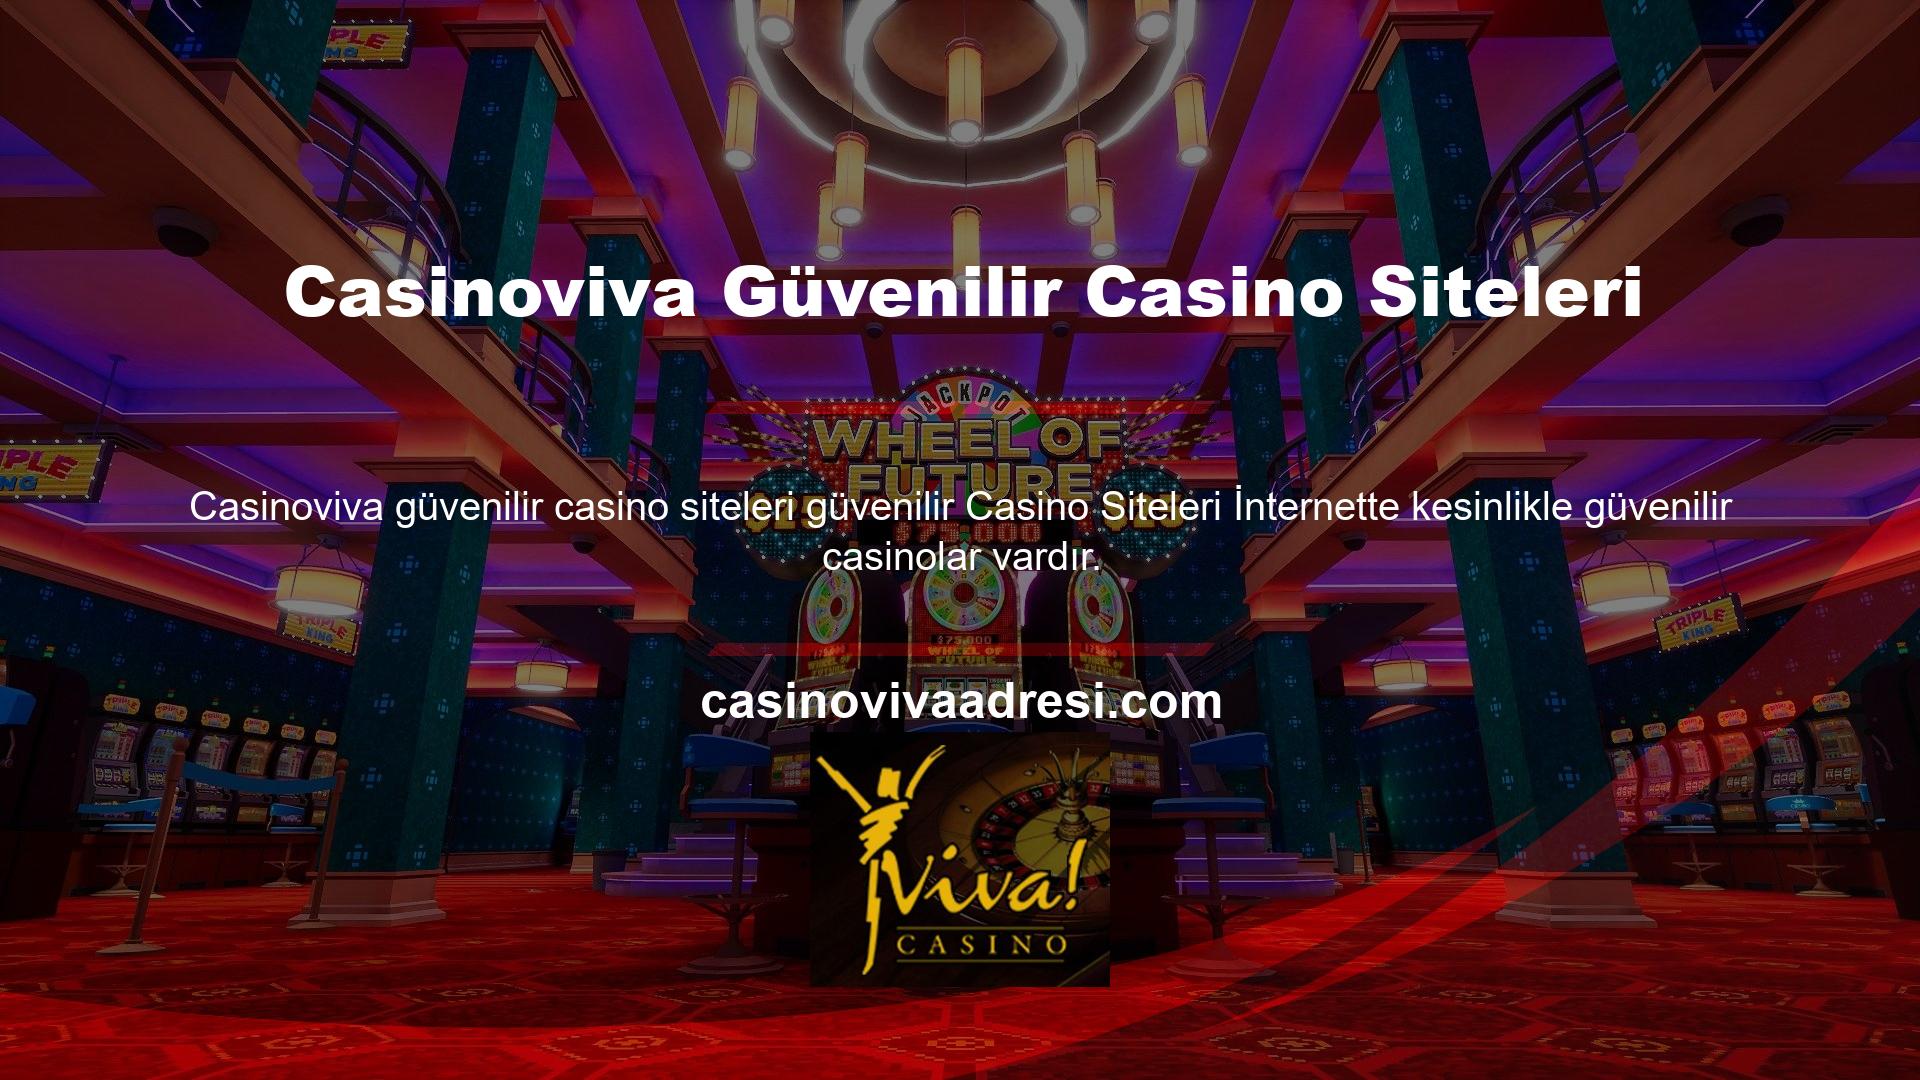 Casinoviva listenin başında yer alıyor, ancak aşağıdakilere duyarlıysanız güvenle oynayabilir ve para kazanabilirsiniz:

	Casino sitesinin lisanslı olduğundan ve şirket bilgilerinin şeffaf olduğundan emin olun